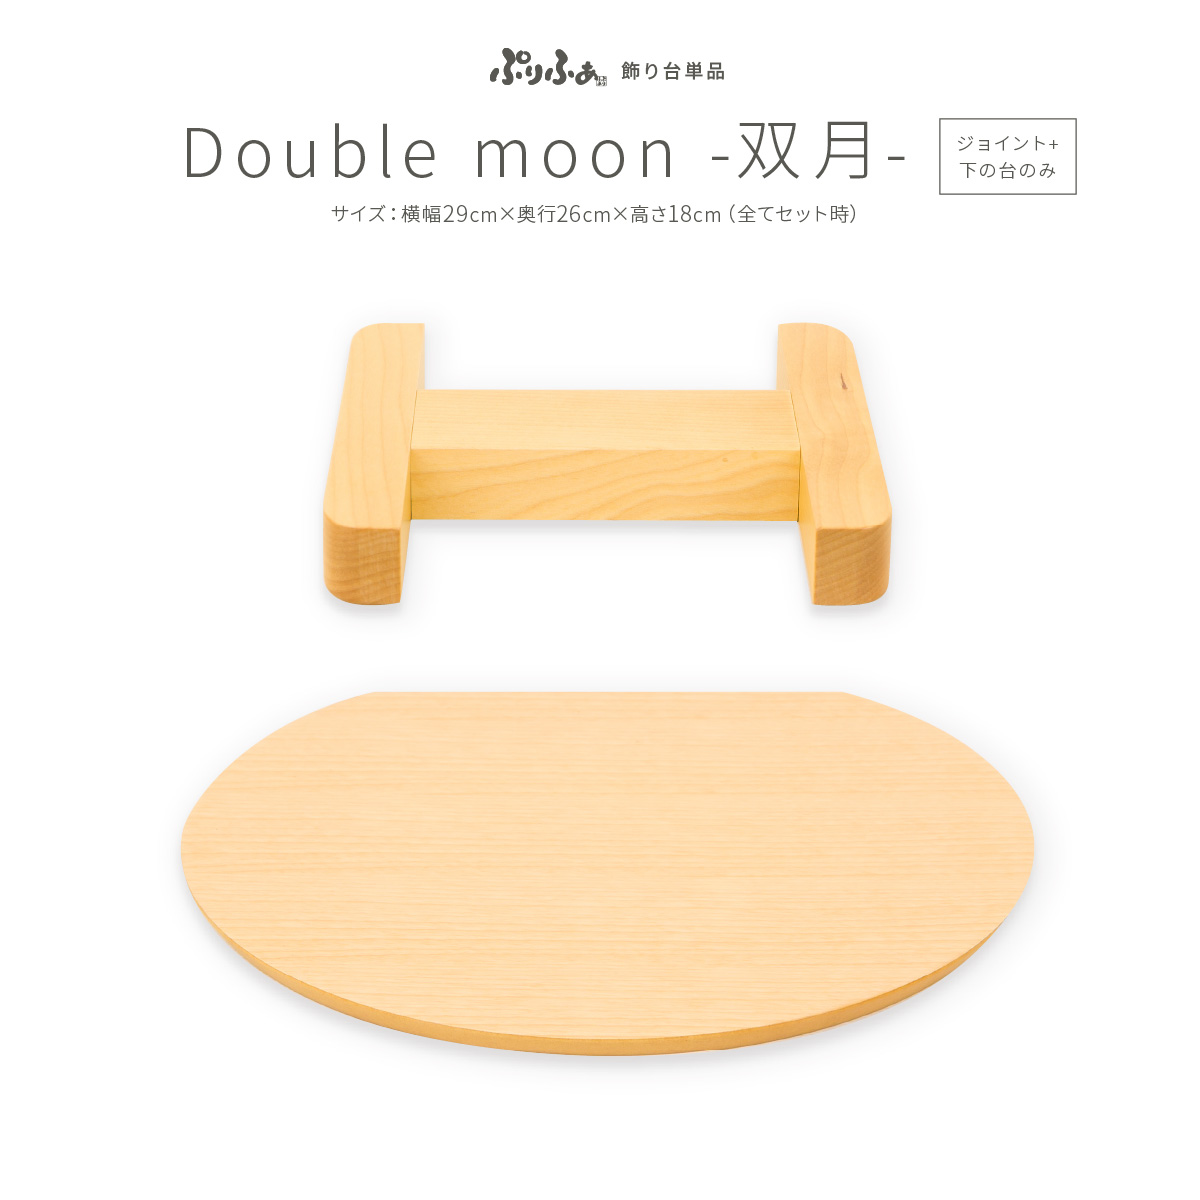 ぷりふあ 単品 Double moon -双月-(ジョイントパーツ+下の台のみ 